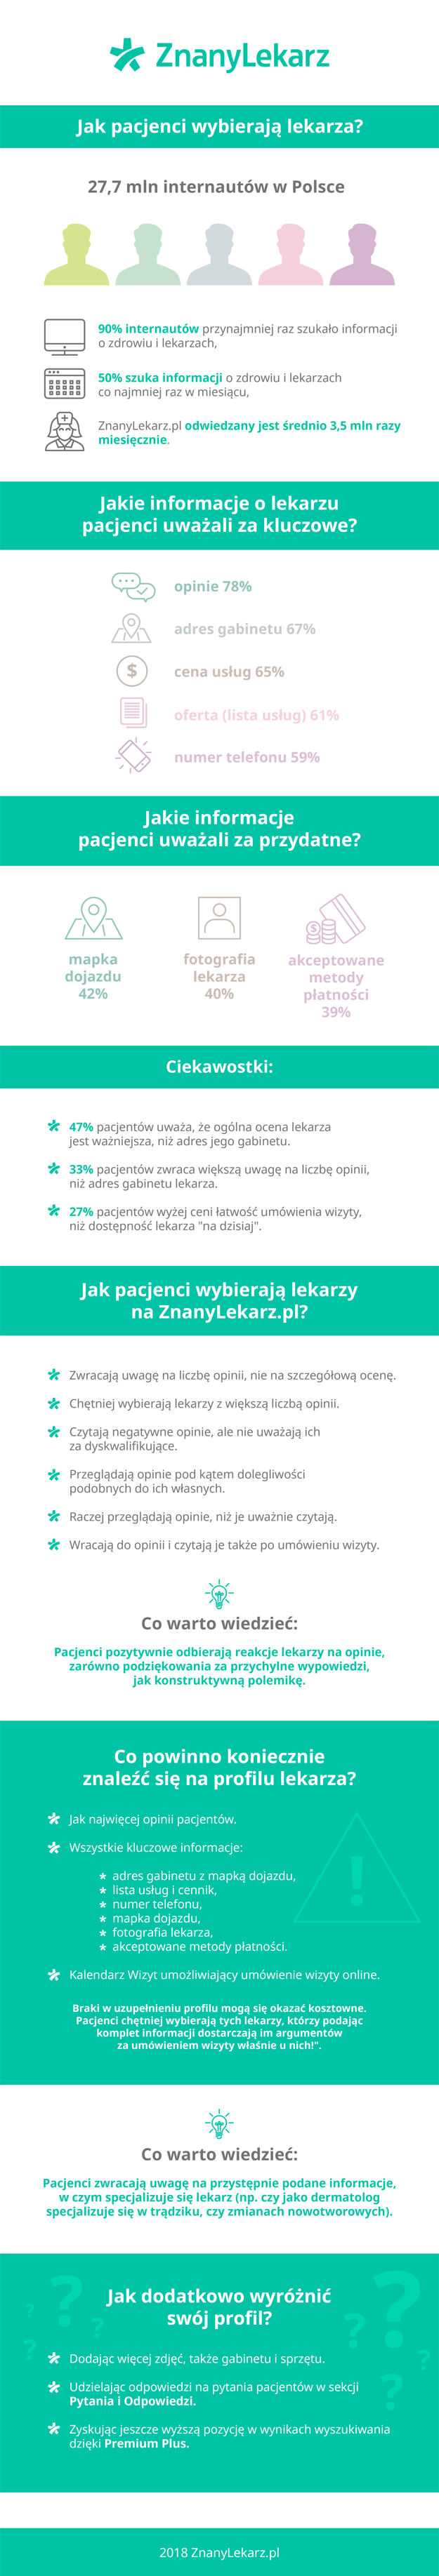 ZL infografika jak pacjenci wybieraja lekarza.png